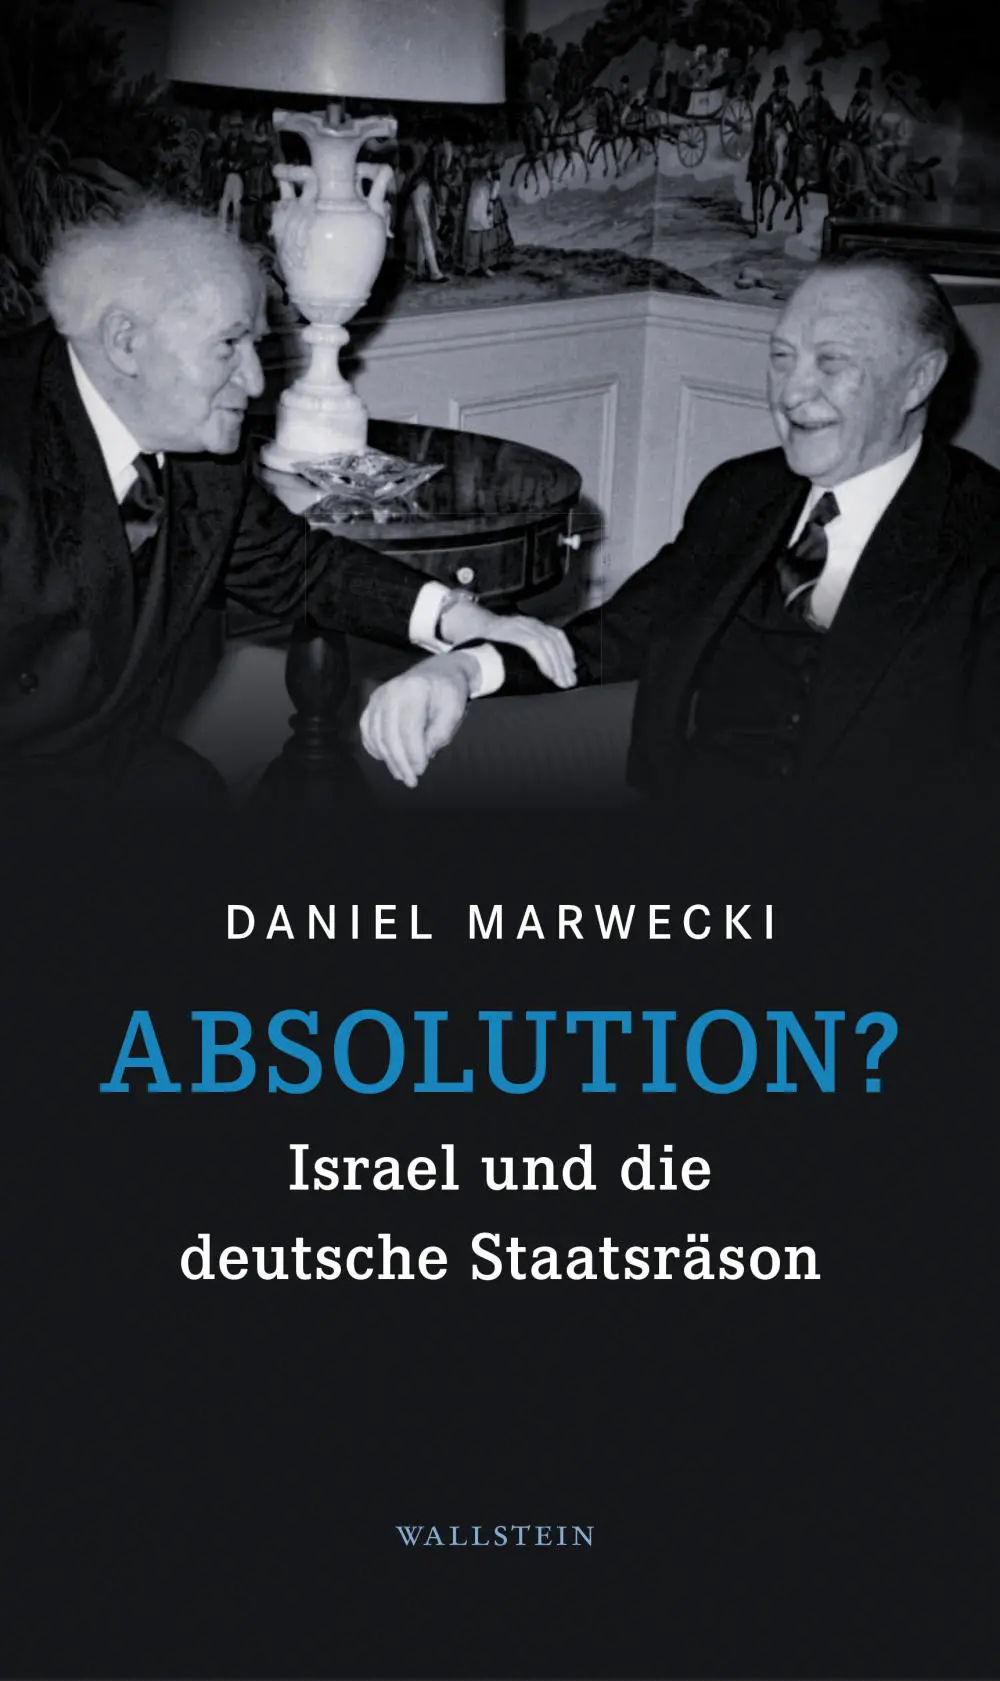 Buchcover: Daniel Marwecki: Absolution?